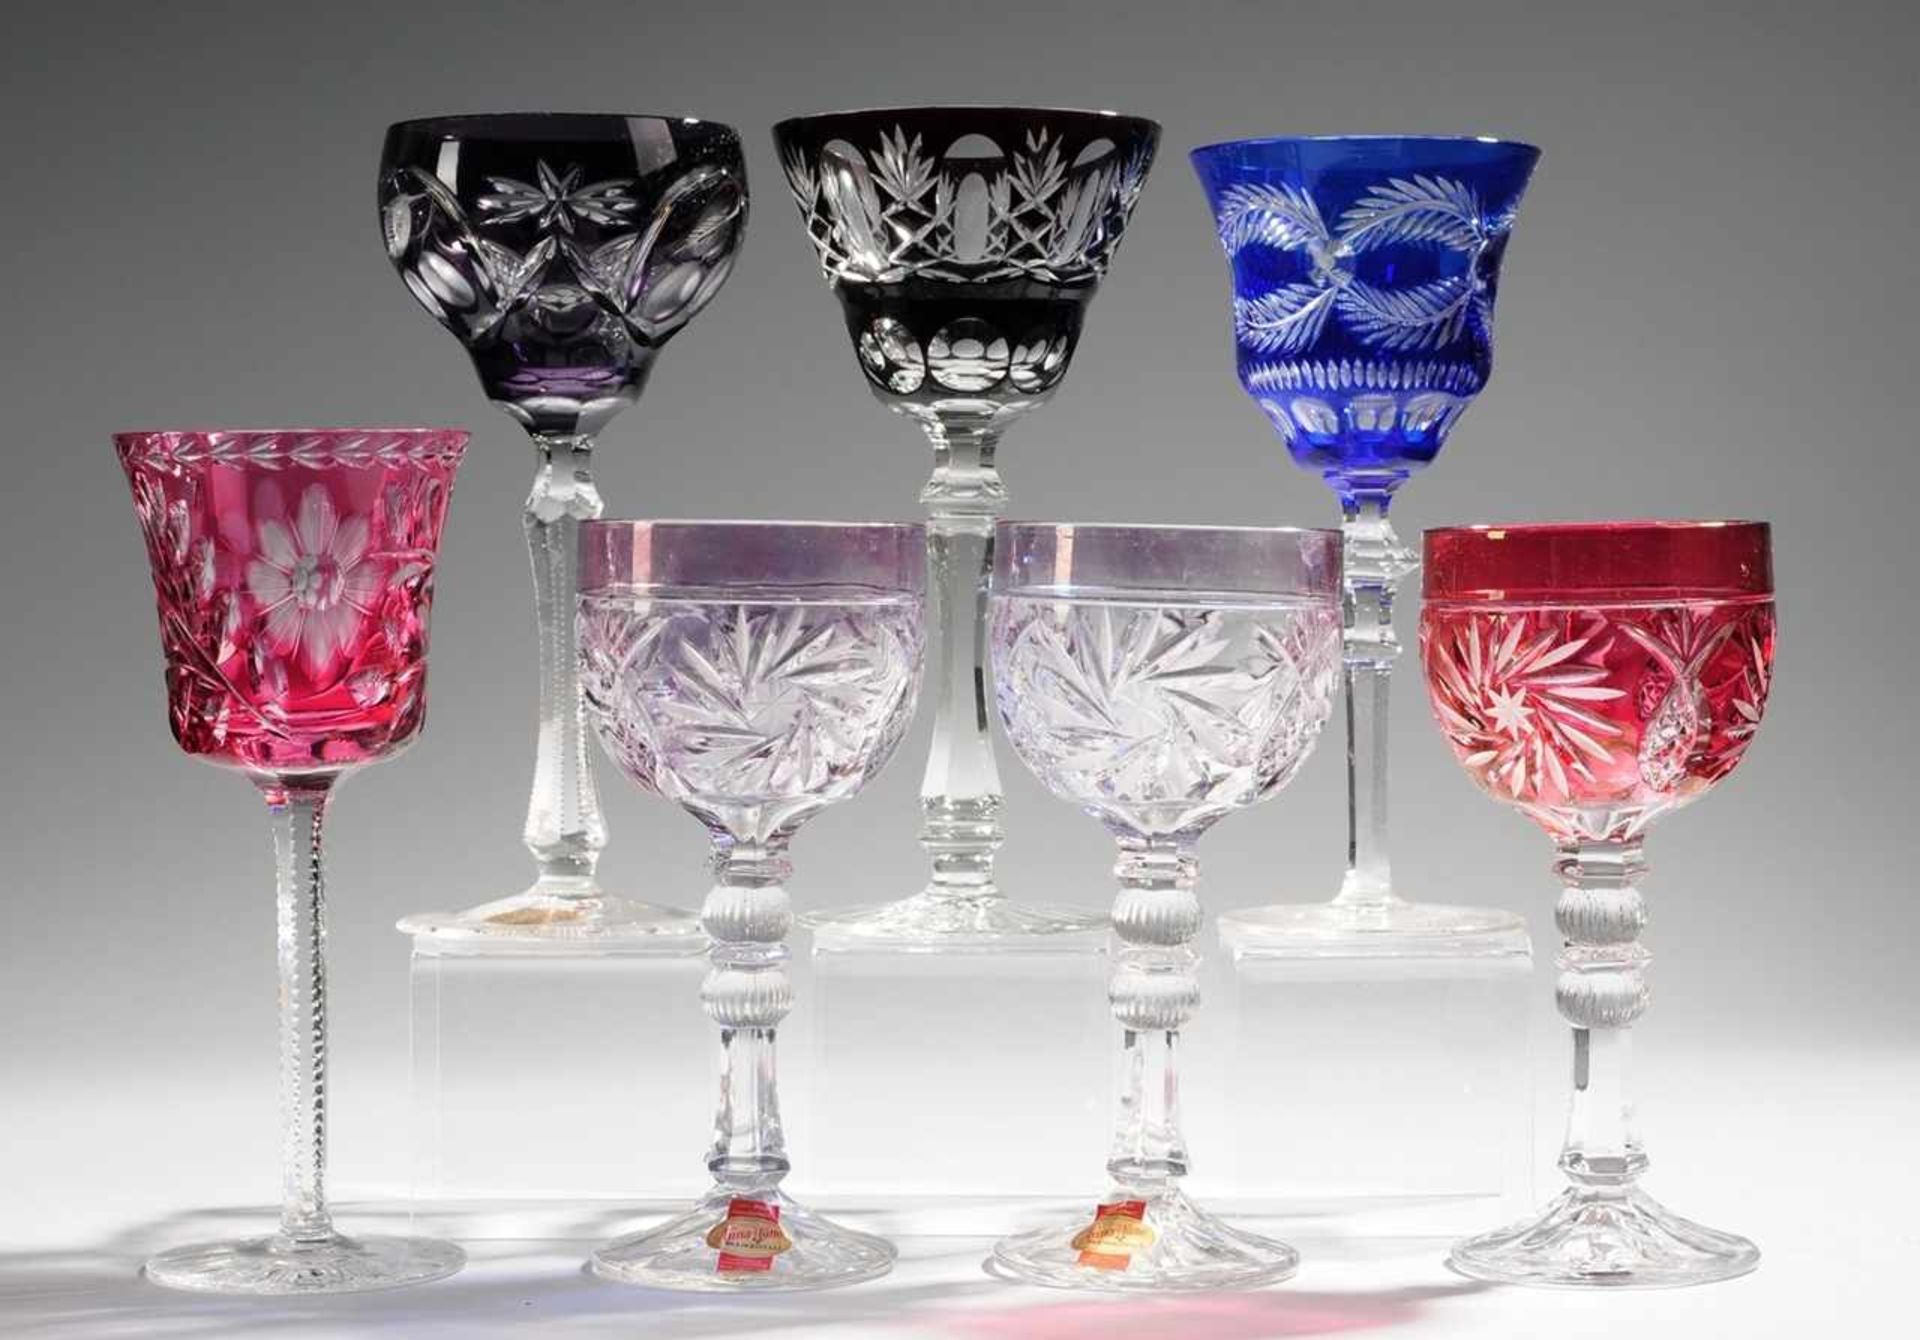 Sieben RömerFarbloses Bleikristallglas, part. violett, rot u. blau überfangen bzw. gebeizt.